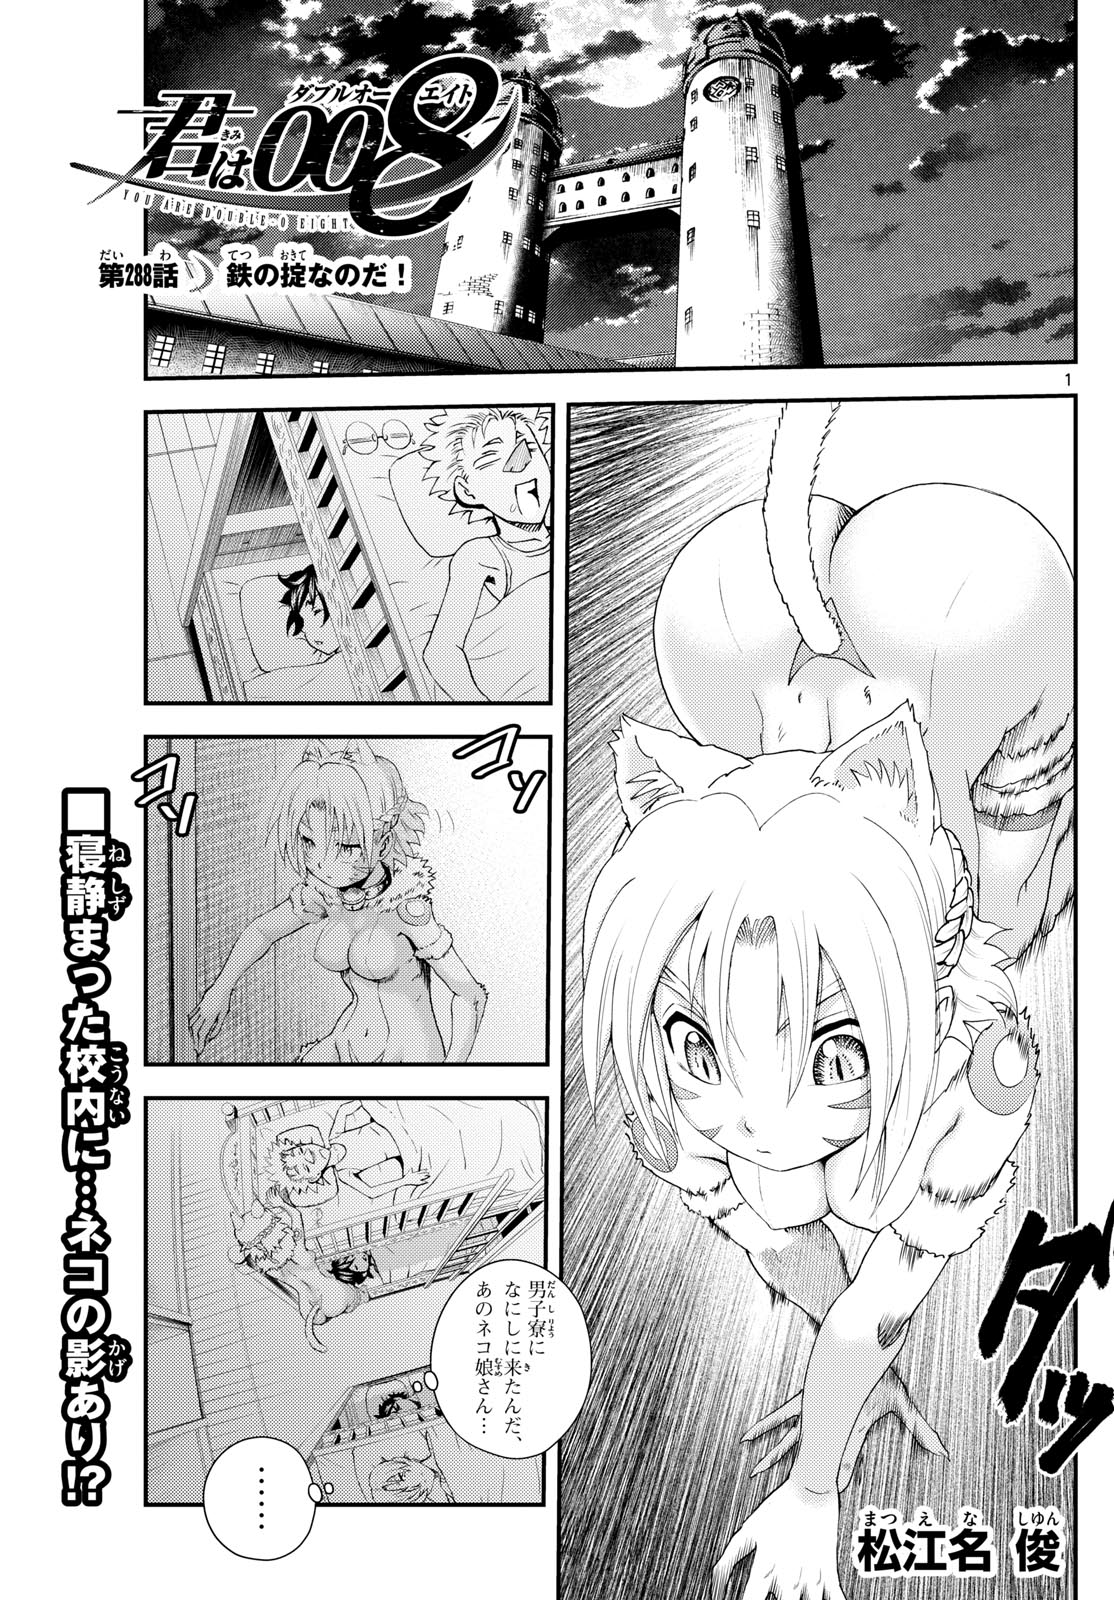 Kimi wa 008 - Chapter 288 - Page 1